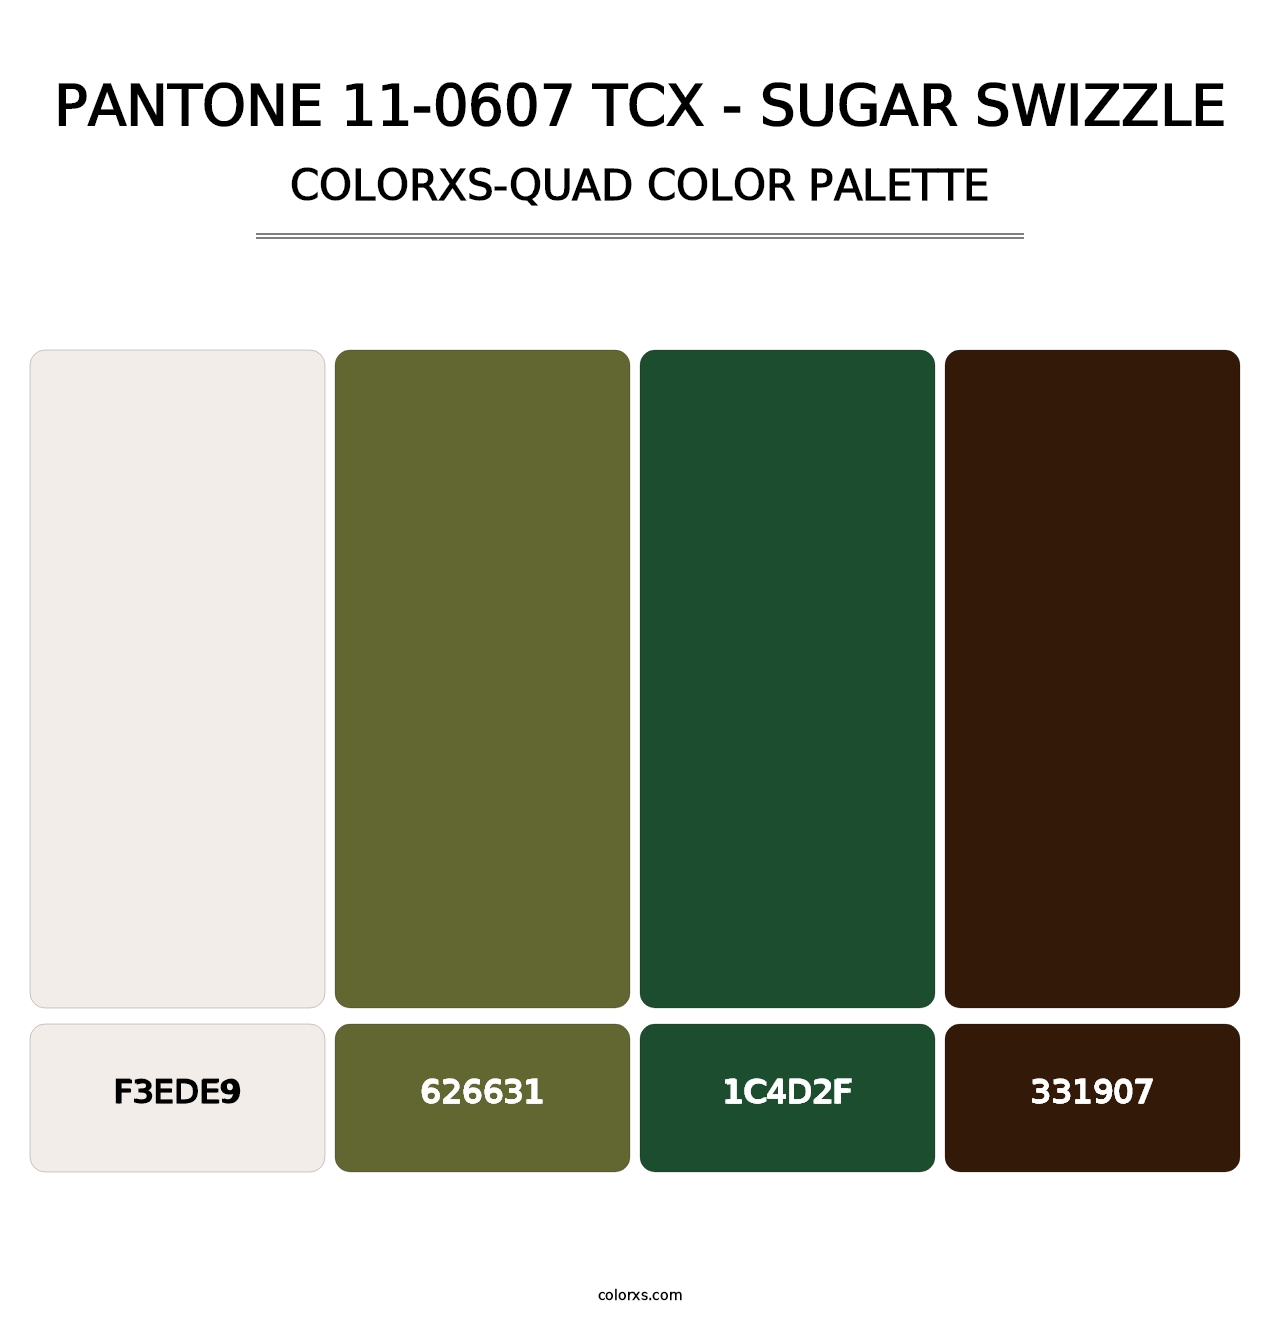 PANTONE 11-0607 TCX - Sugar Swizzle - Colorxs Quad Palette